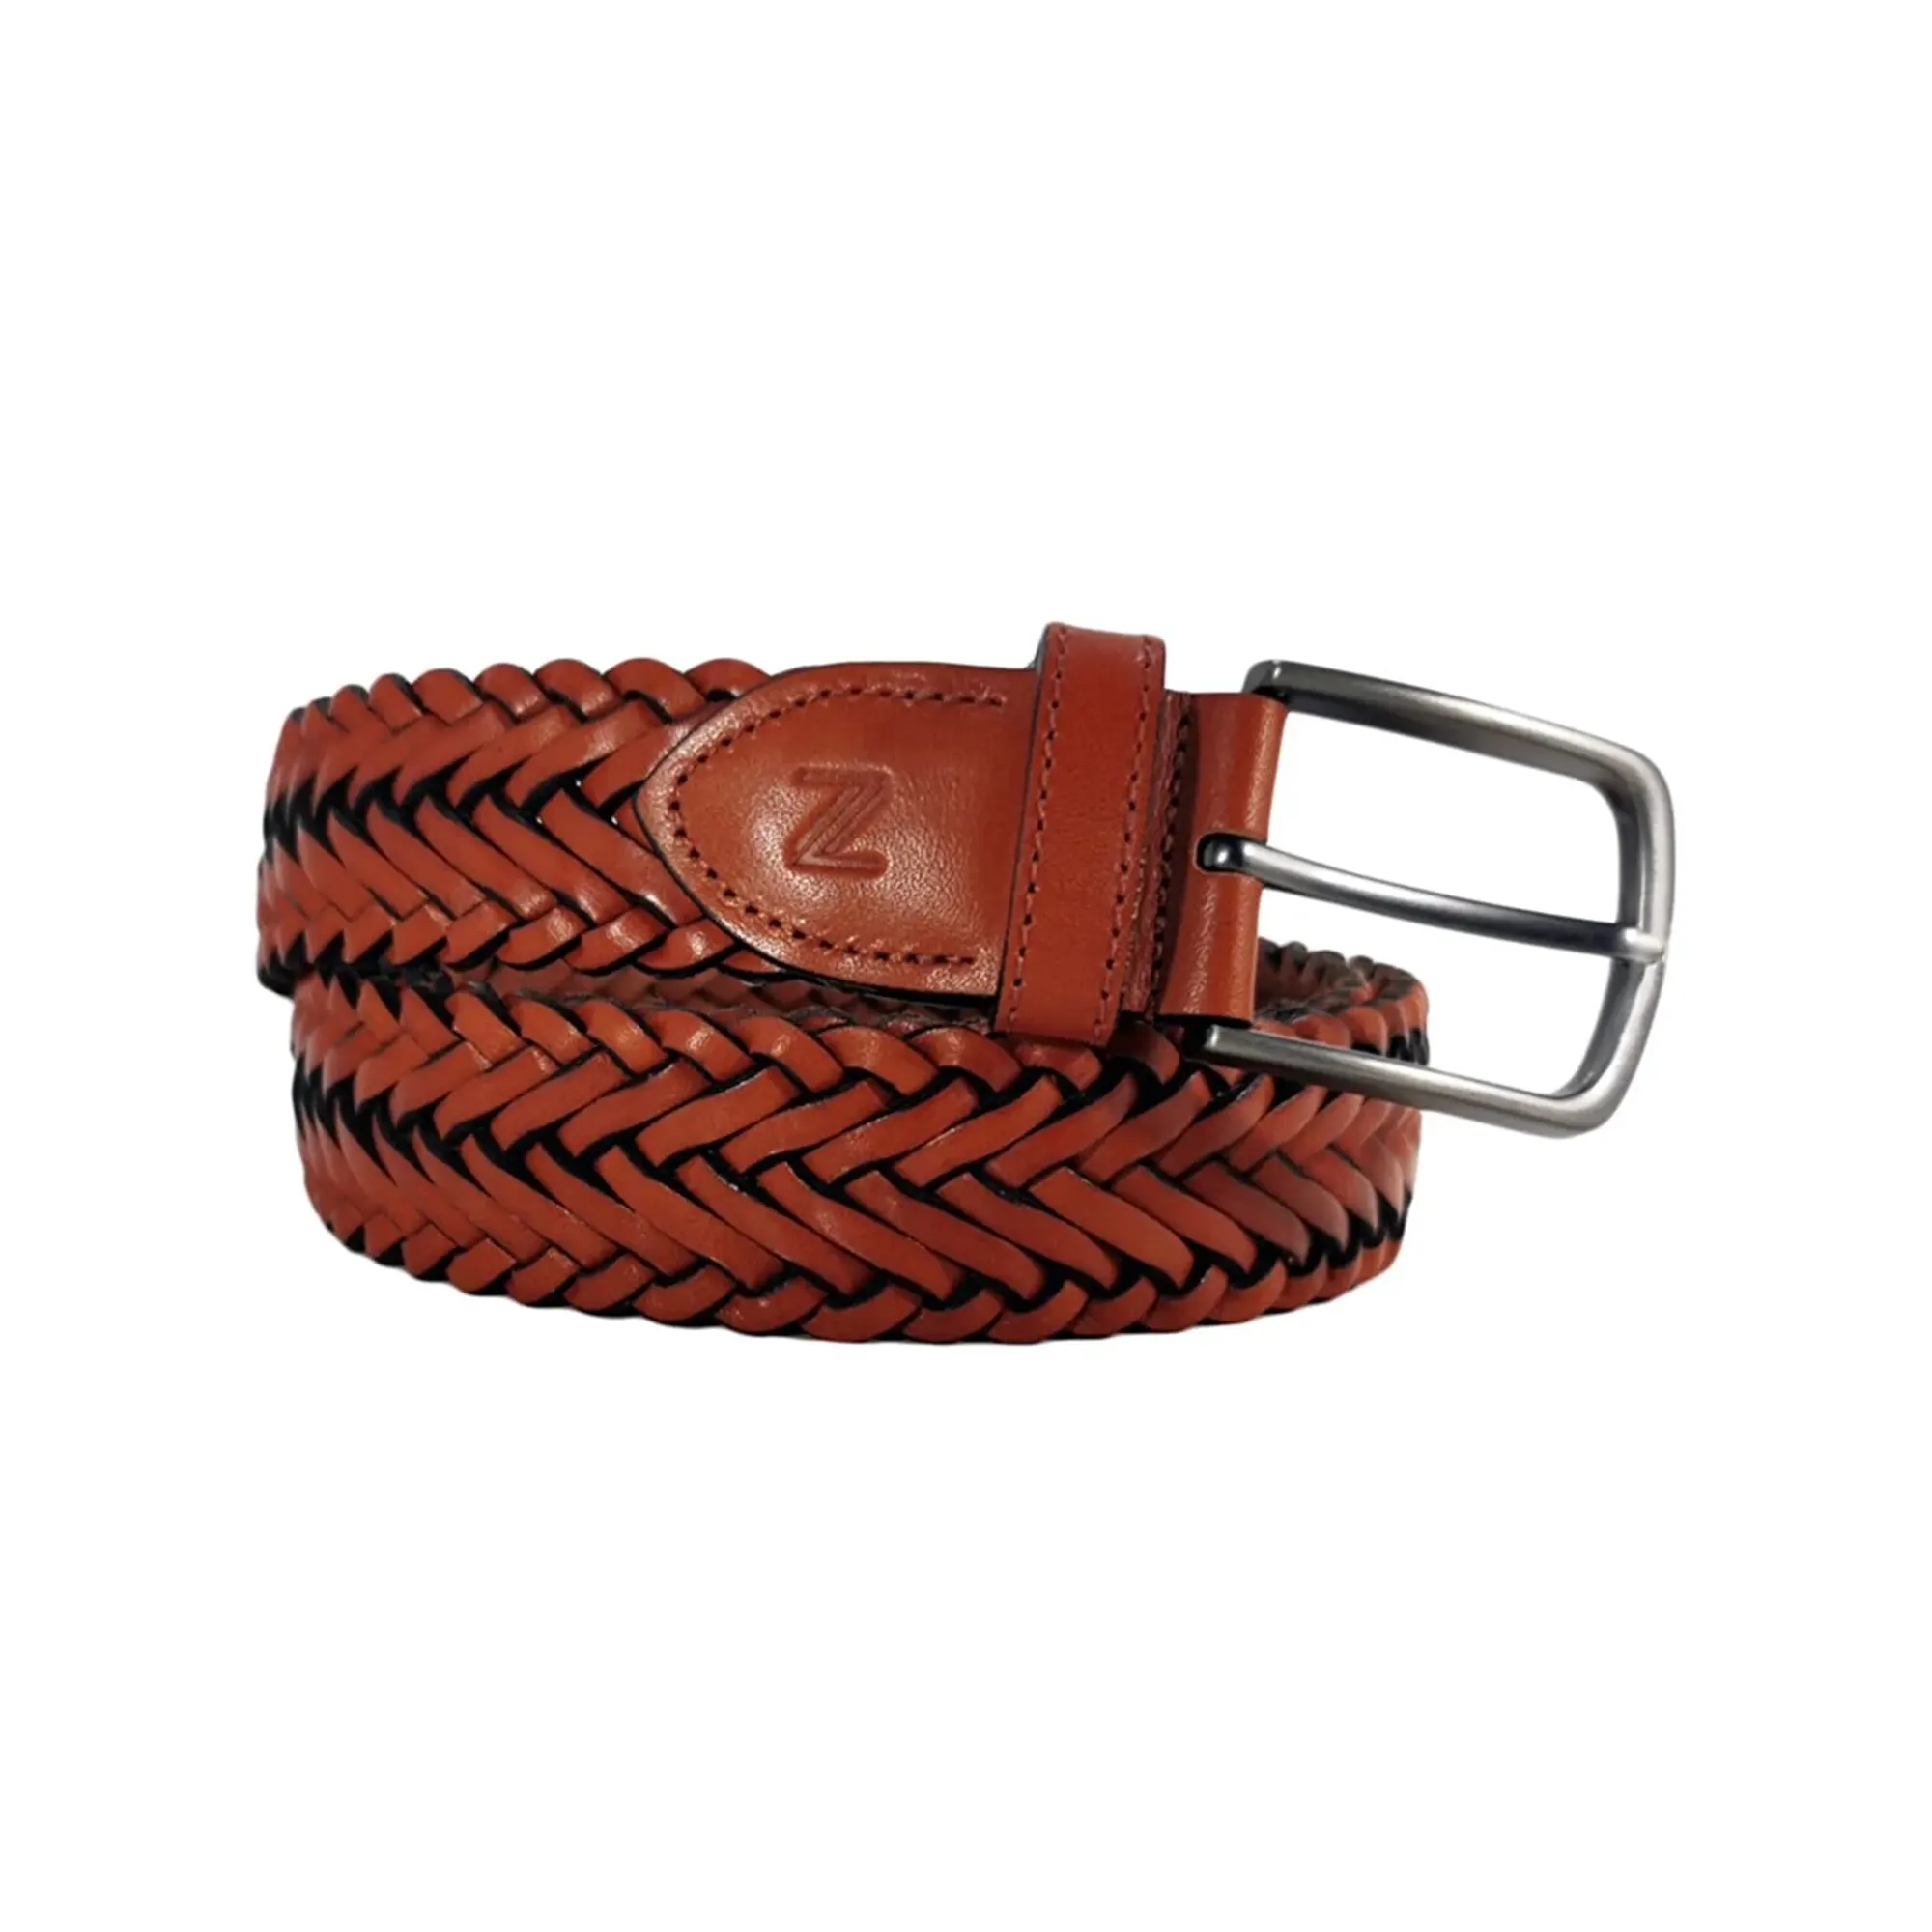 Buy Cognac Brown Leather Mens Woven Belt 